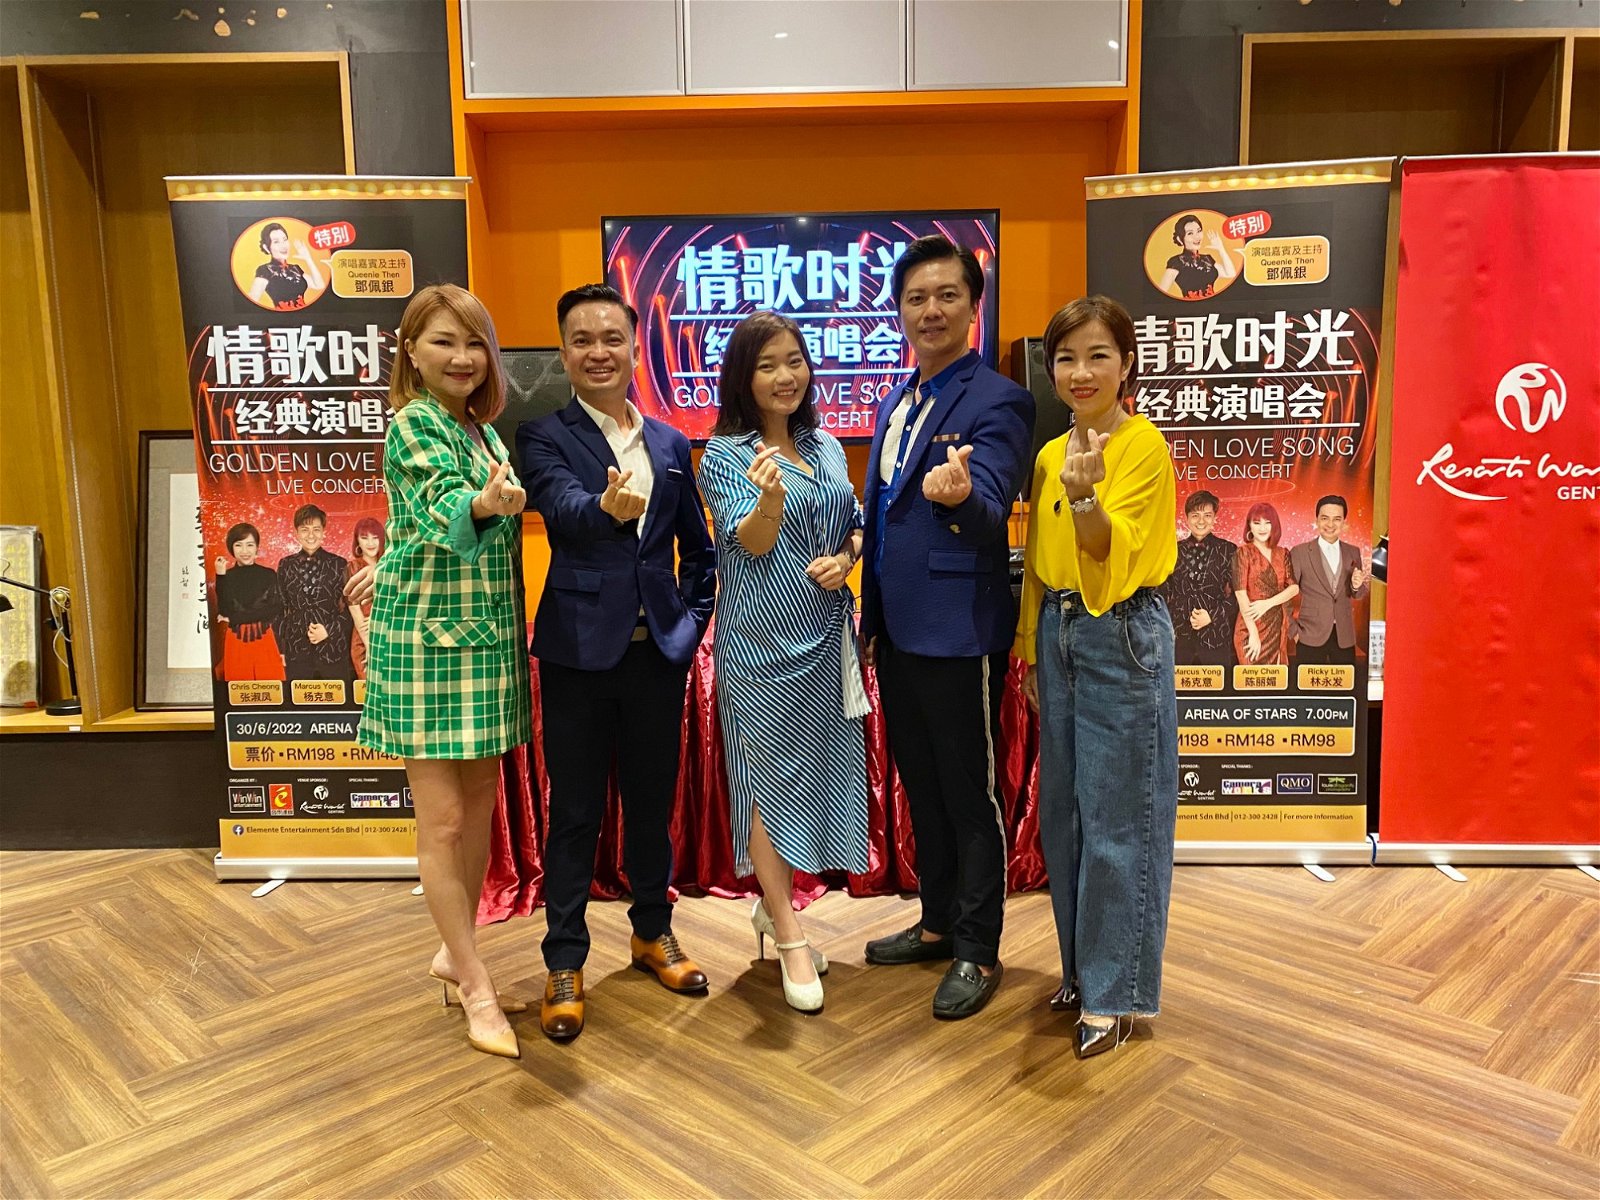 陈丽媚、林永发、邓佩银（演唱会司仪兼嘉宾）、杨克意以及张淑凤一起出席演唱会记者会。